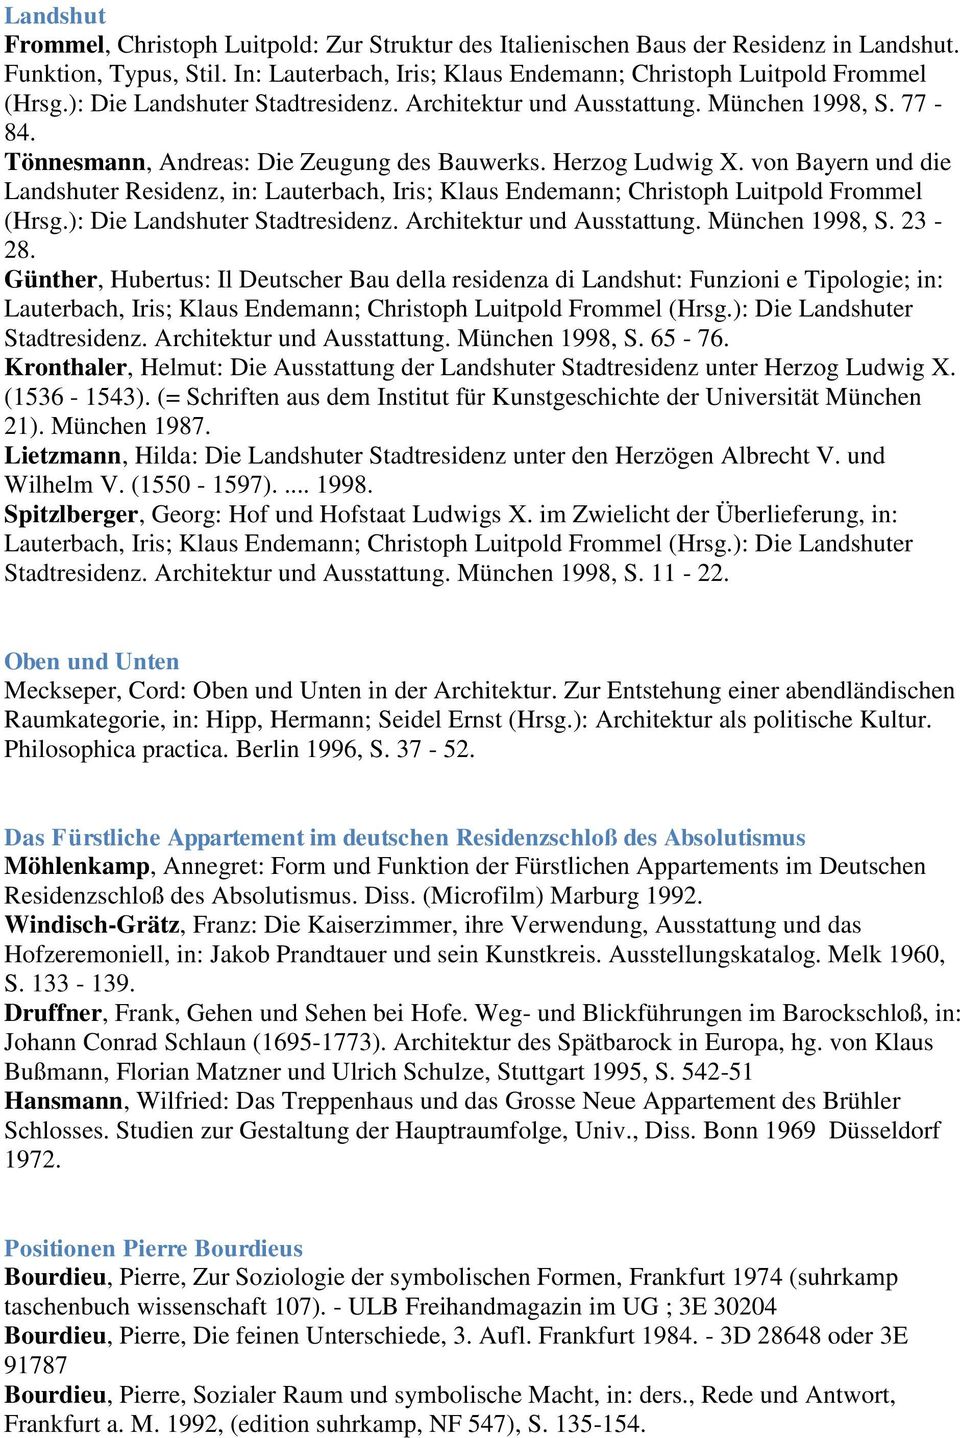 von Bayern und die Landshuter Residenz, in: Lauterbach, Iris; Klaus Endemann; Christoph Luitpold Frommel (Hrsg.): Die Landshuter Stadtresidenz. Architektur und Ausstattung. München 1998, S. 23-28.